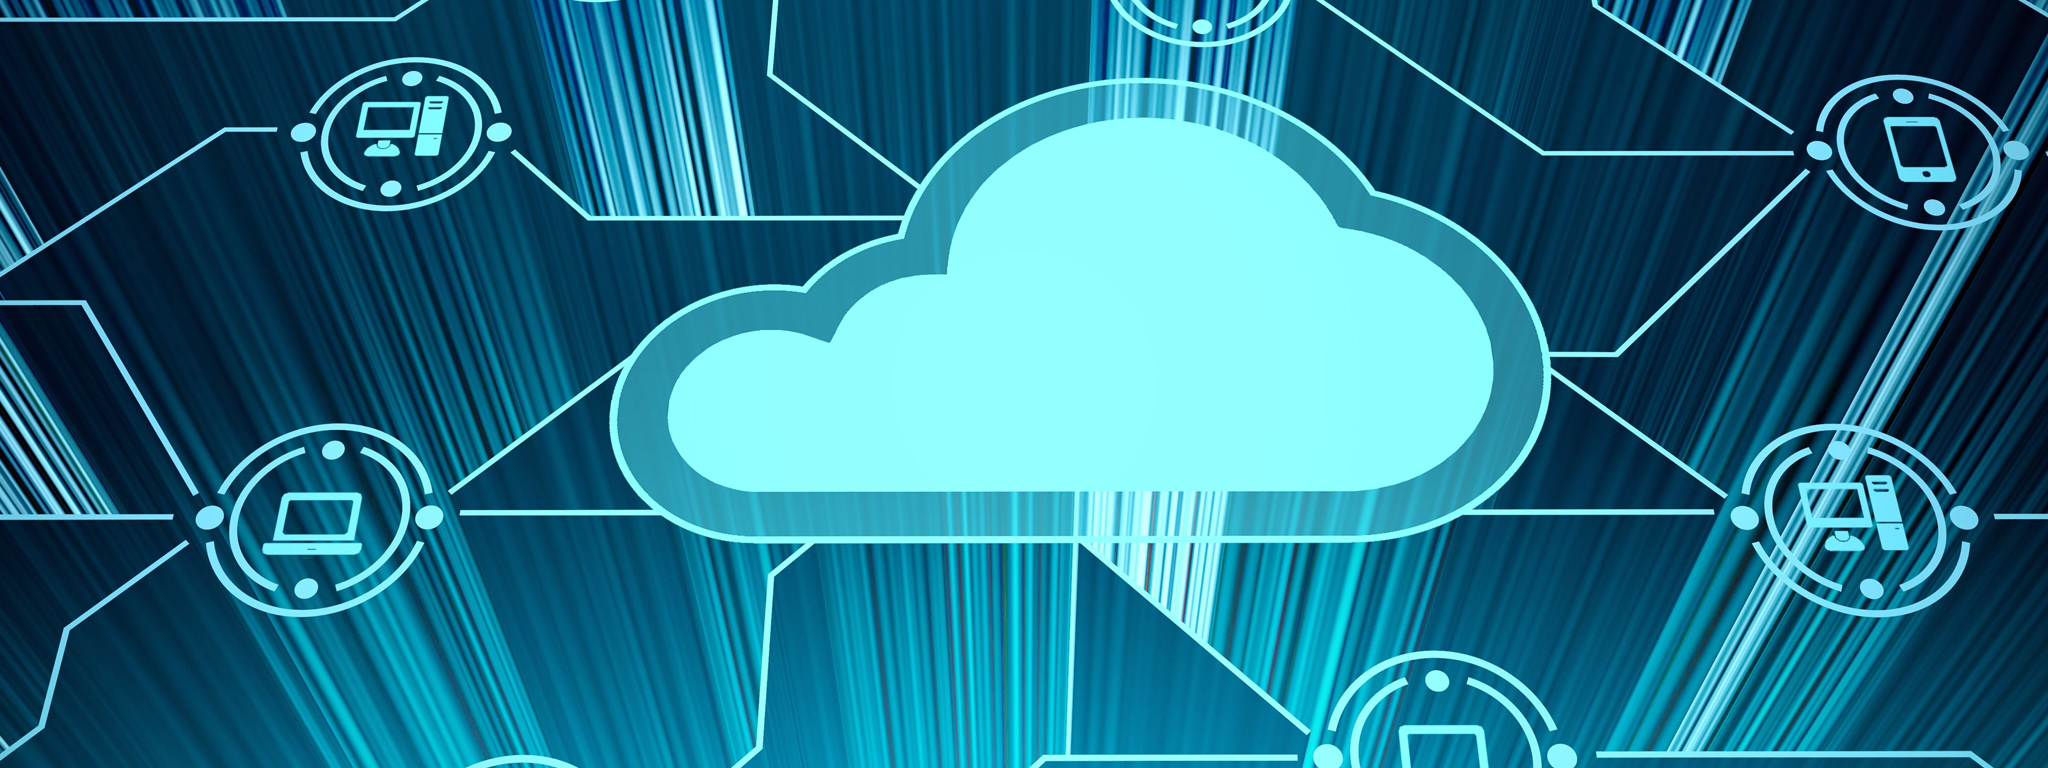 Компьютерное изображение облака, окруженное значками устройств, которые представляют настольные компьютеры, ноутбуки и мобильные устройства